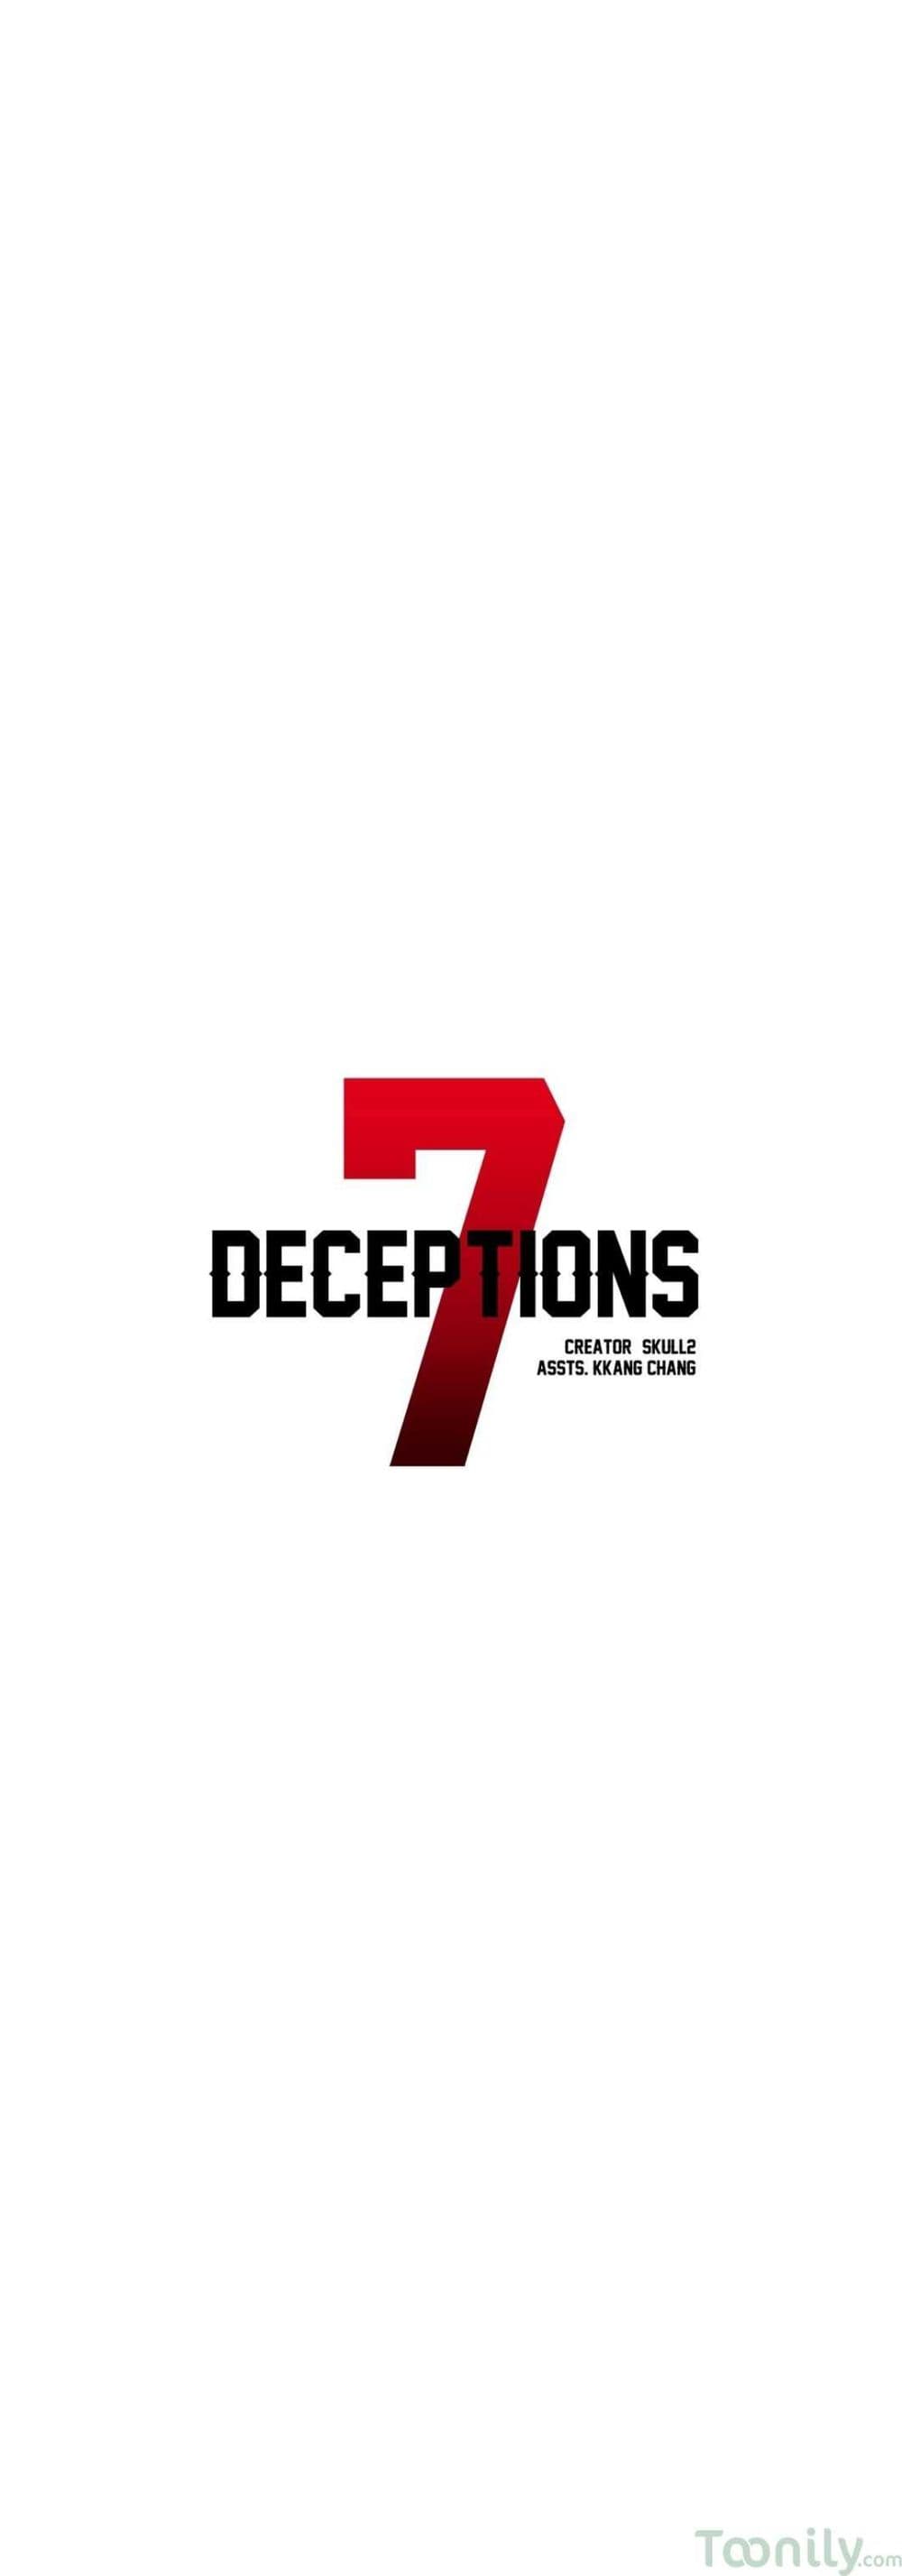 Deceptions 31 (9)